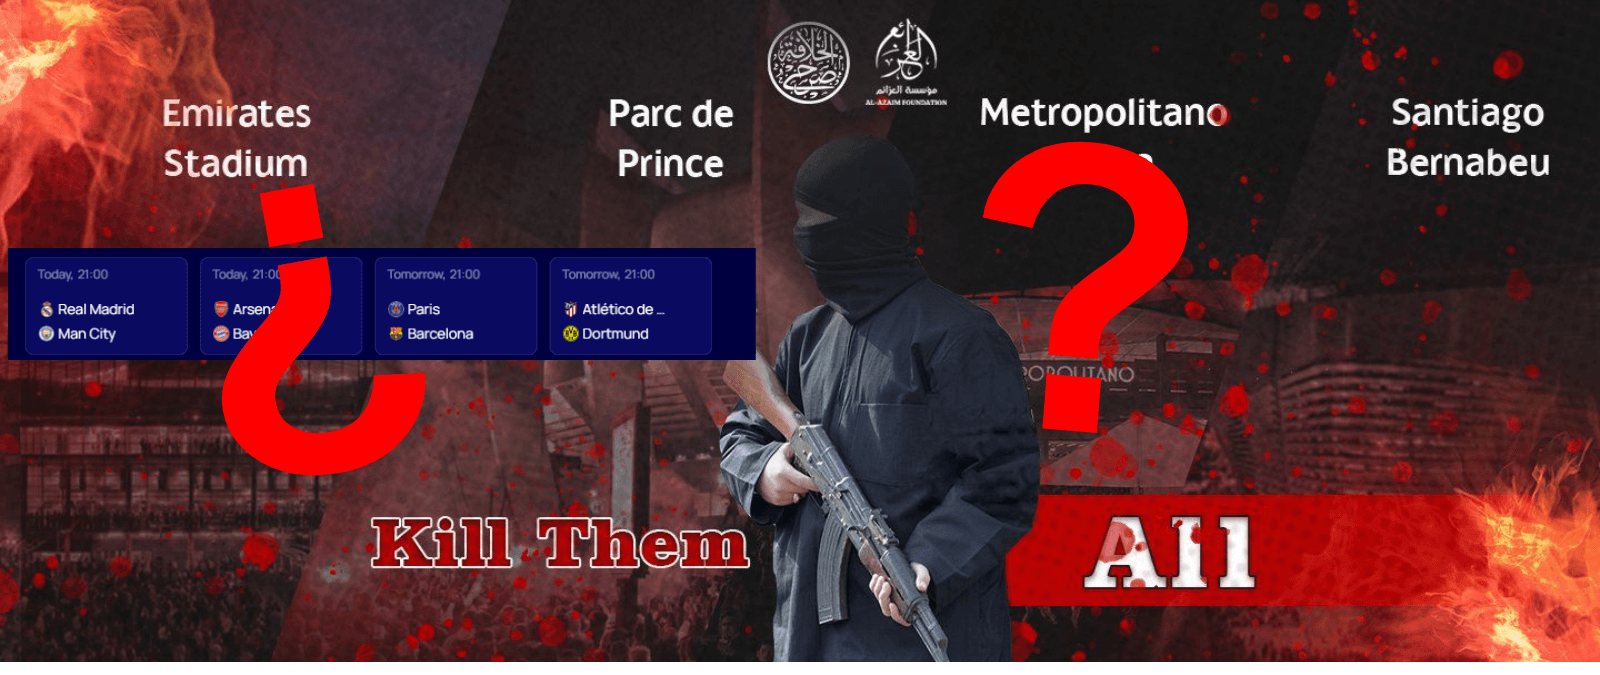 Qué sabemos de la supuesta amenaza terrorista de Daesh contra 4 estadios de fútbol europeos durante los cuartos de final de la Champions